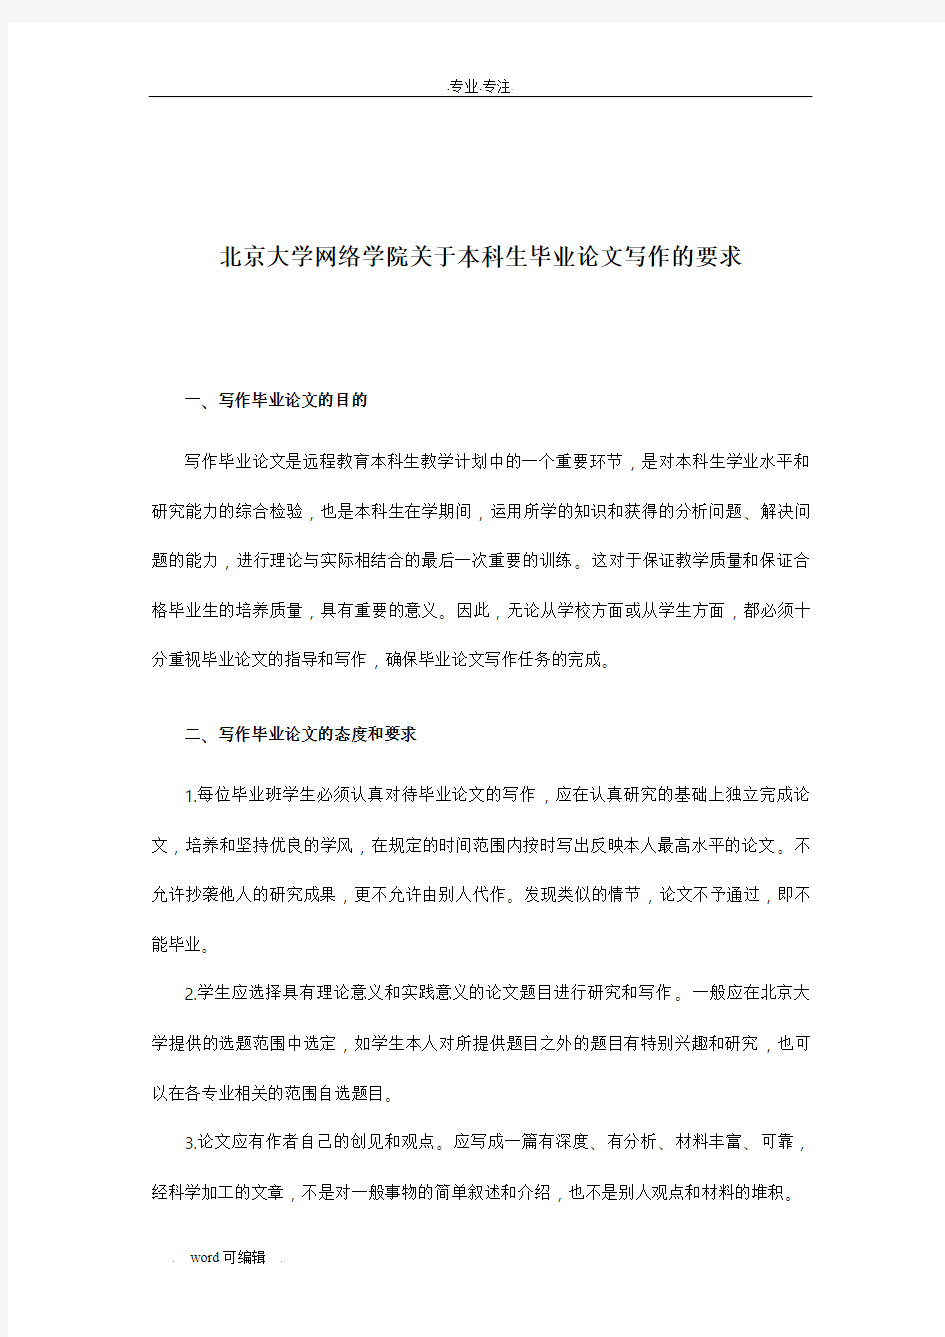 北京大学网络学院关于本科生毕业论文写作的要求内容